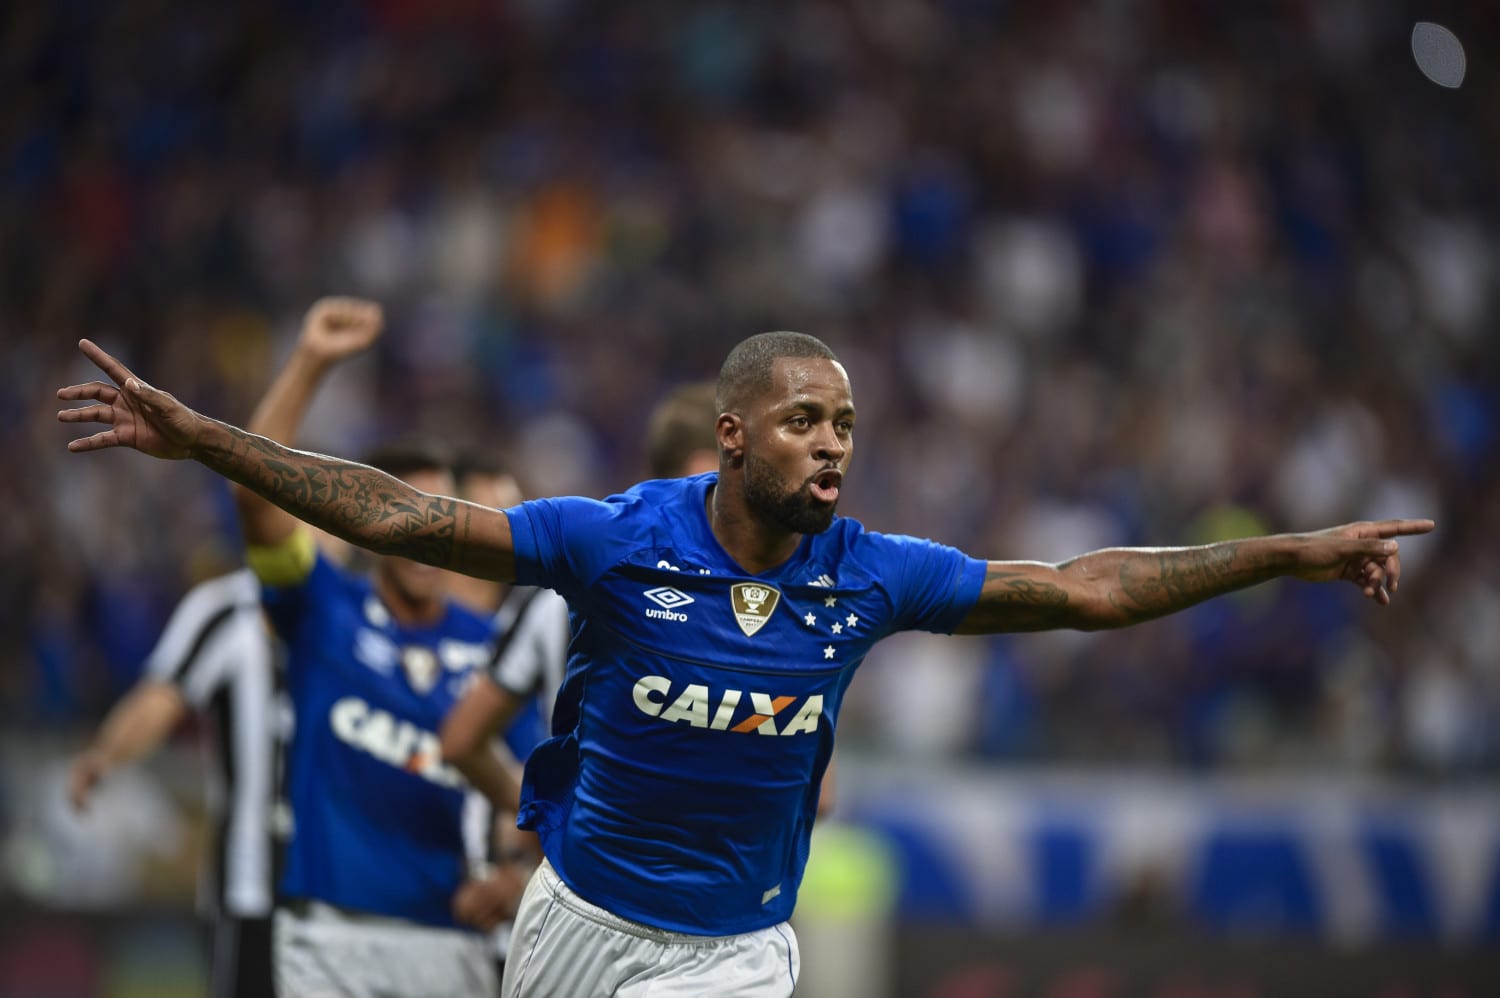 Rodinei e Flamengo sofrem com memes após derrota para o Corinthians - Lance  - R7 Futebol